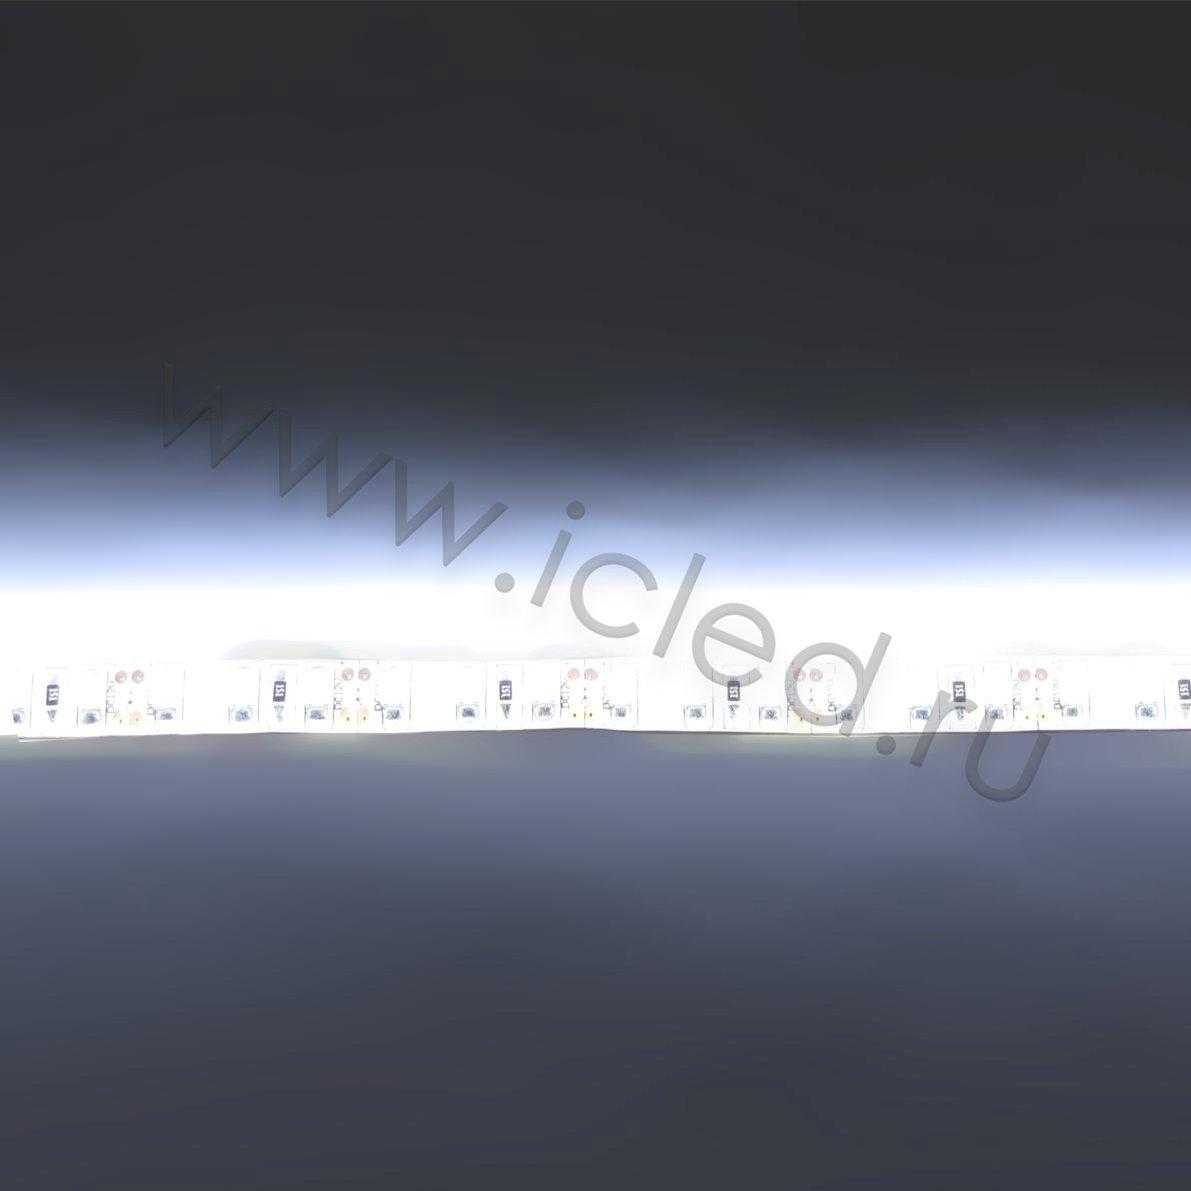 Влагозащищенные светодиодные ленты Светодиодная лента LUX class, 3528, 120 led/m, White, 12V, IP65 Icled